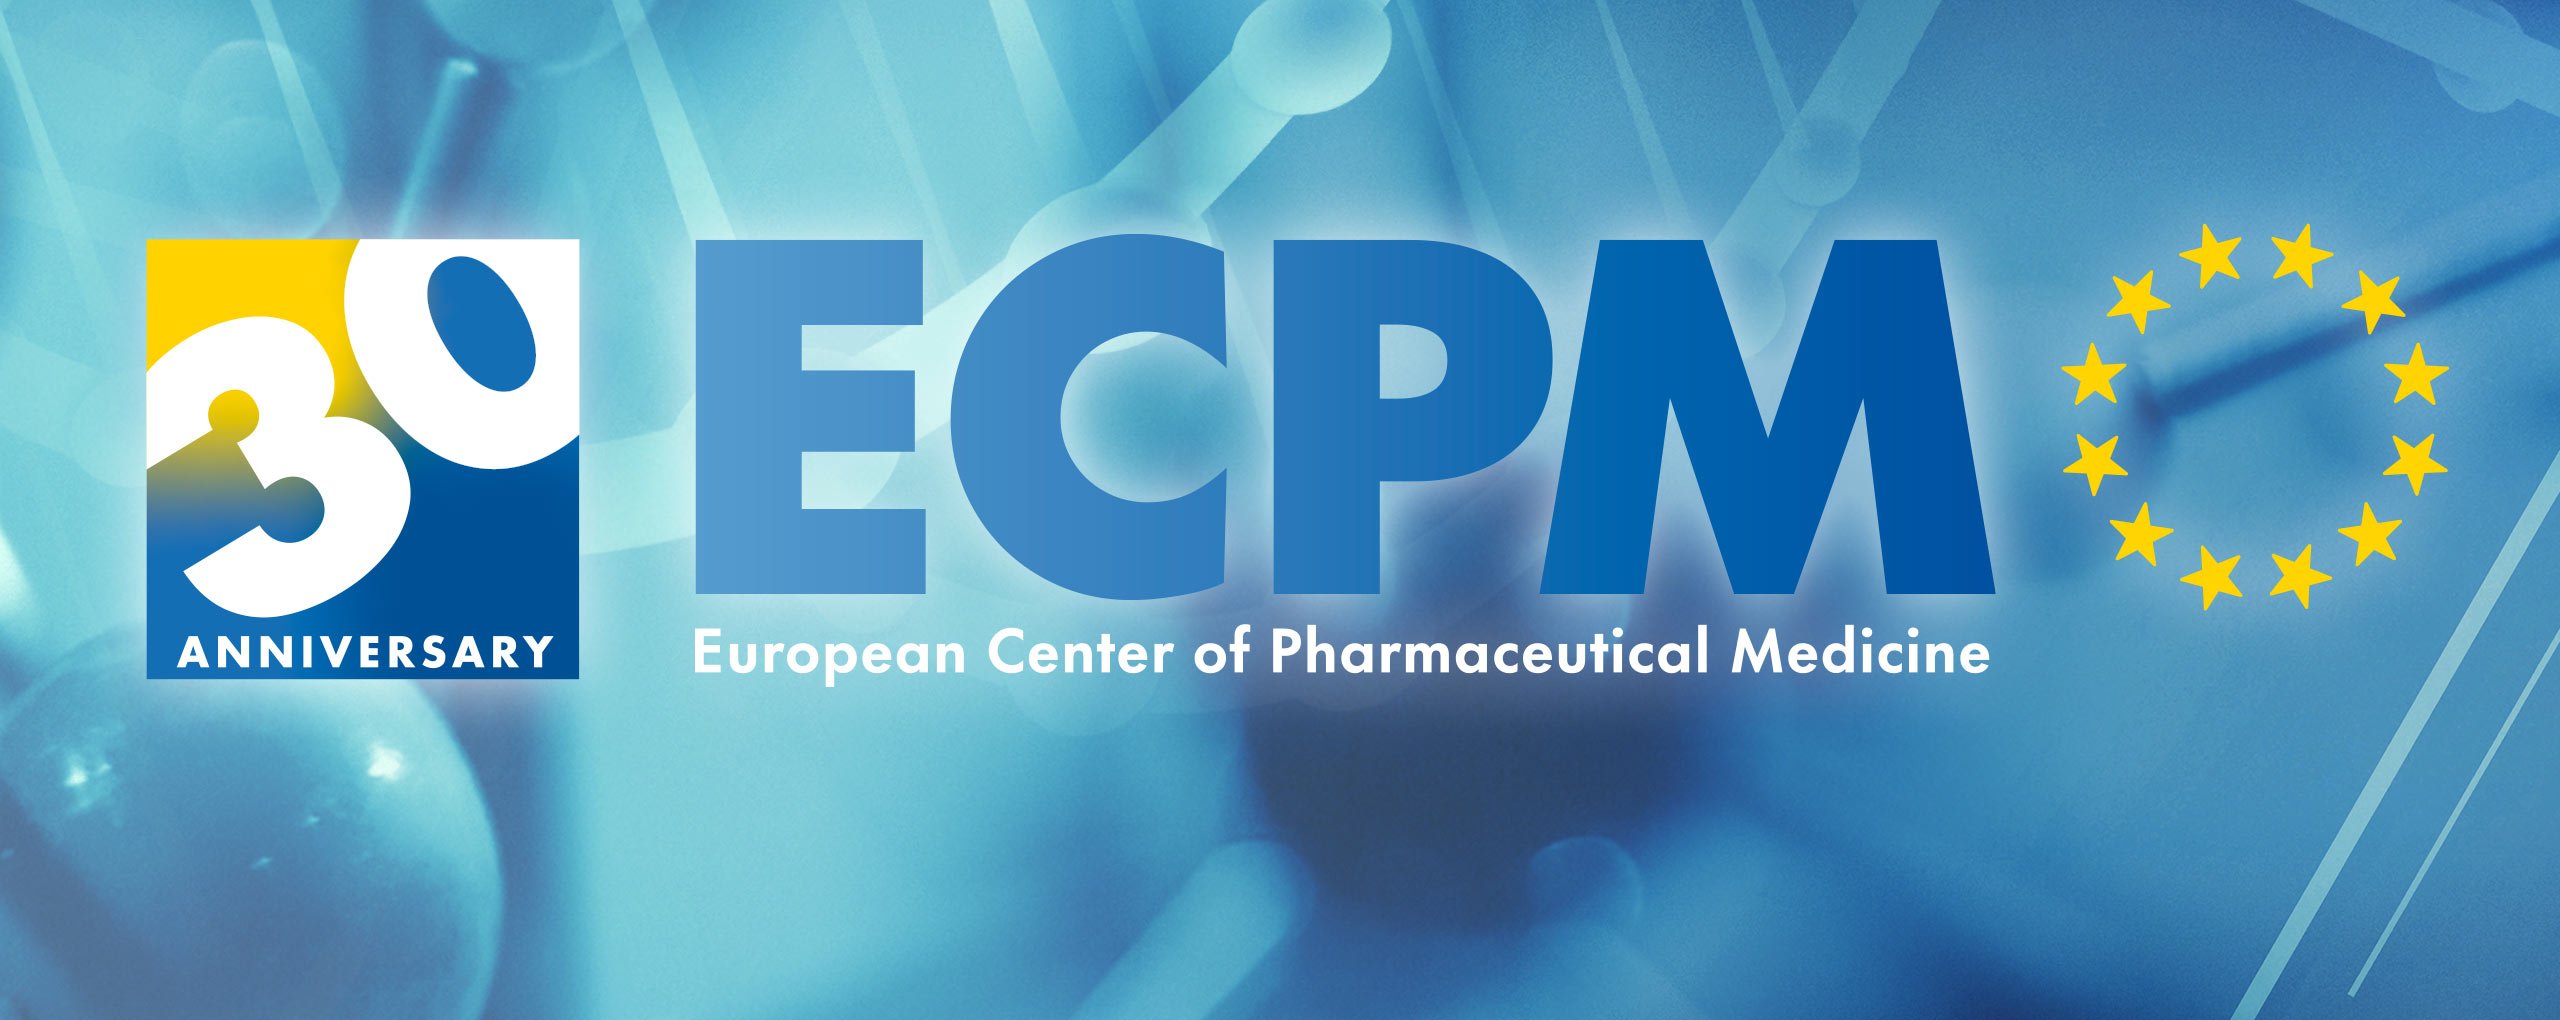 30th Anniversary of ECPM ecpm_banner_anniversary_30_2.jpg